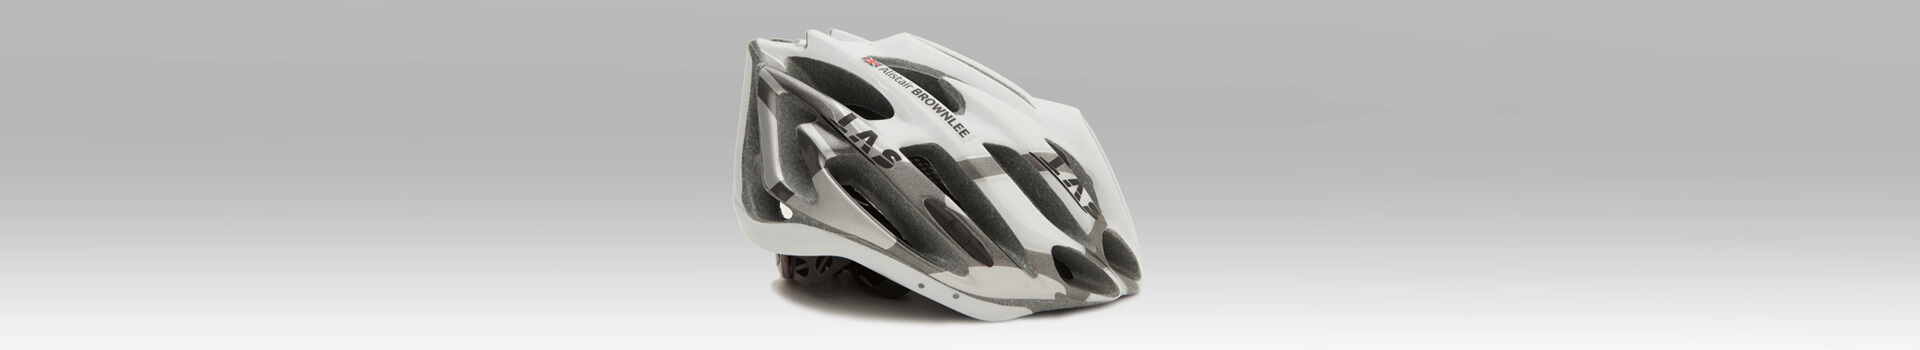 Pegatinas personalizadas para casco de bicicleta